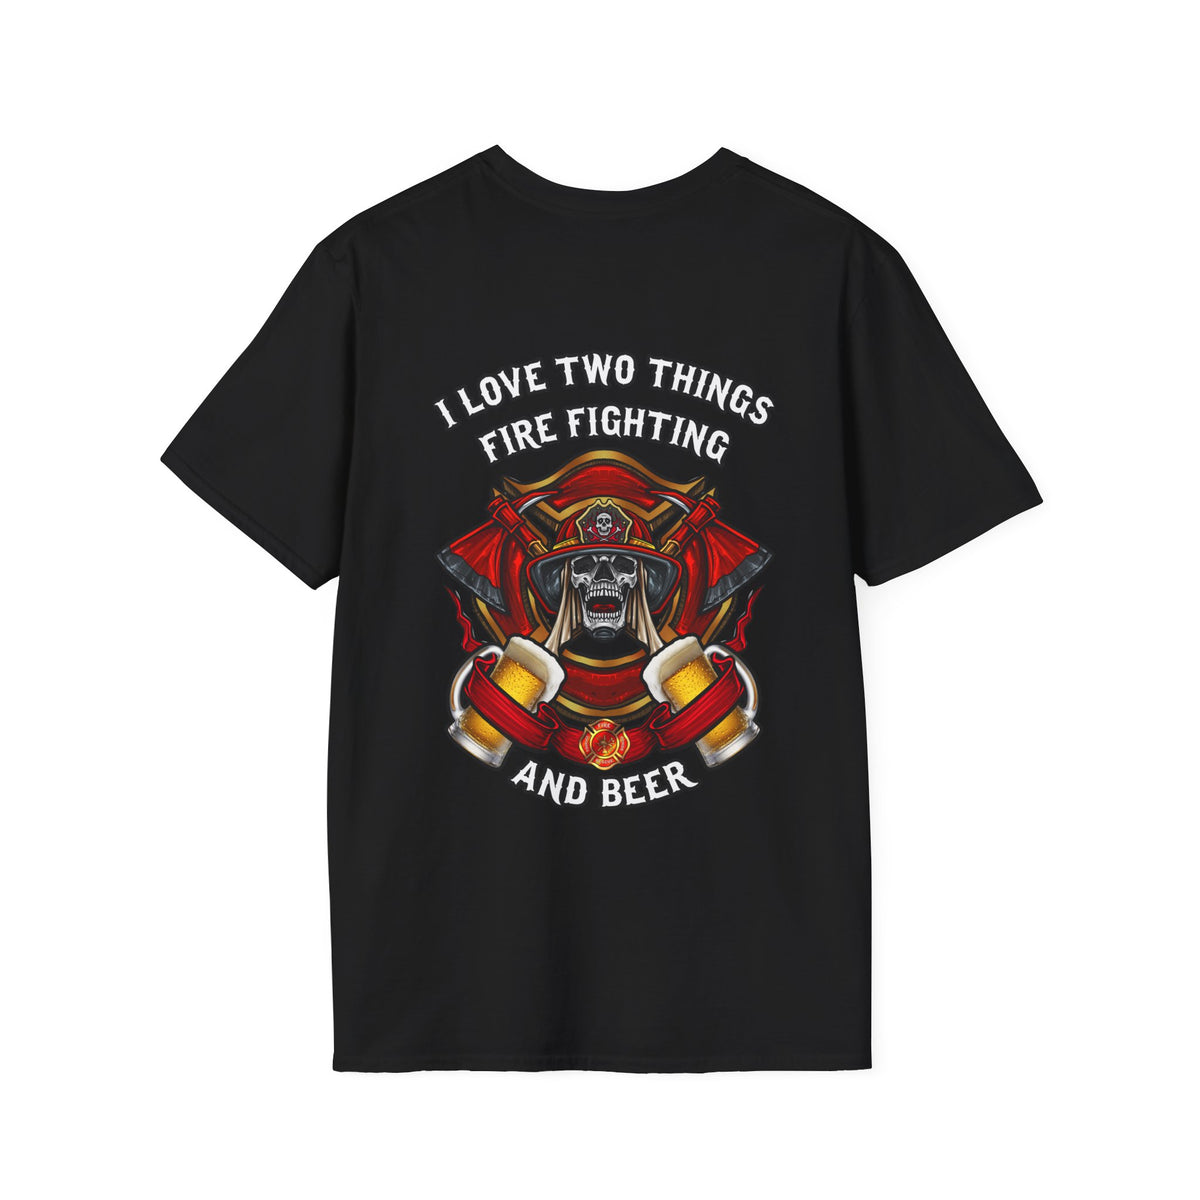 Firefighter T-shirt / Proud Firefighter T-shirt